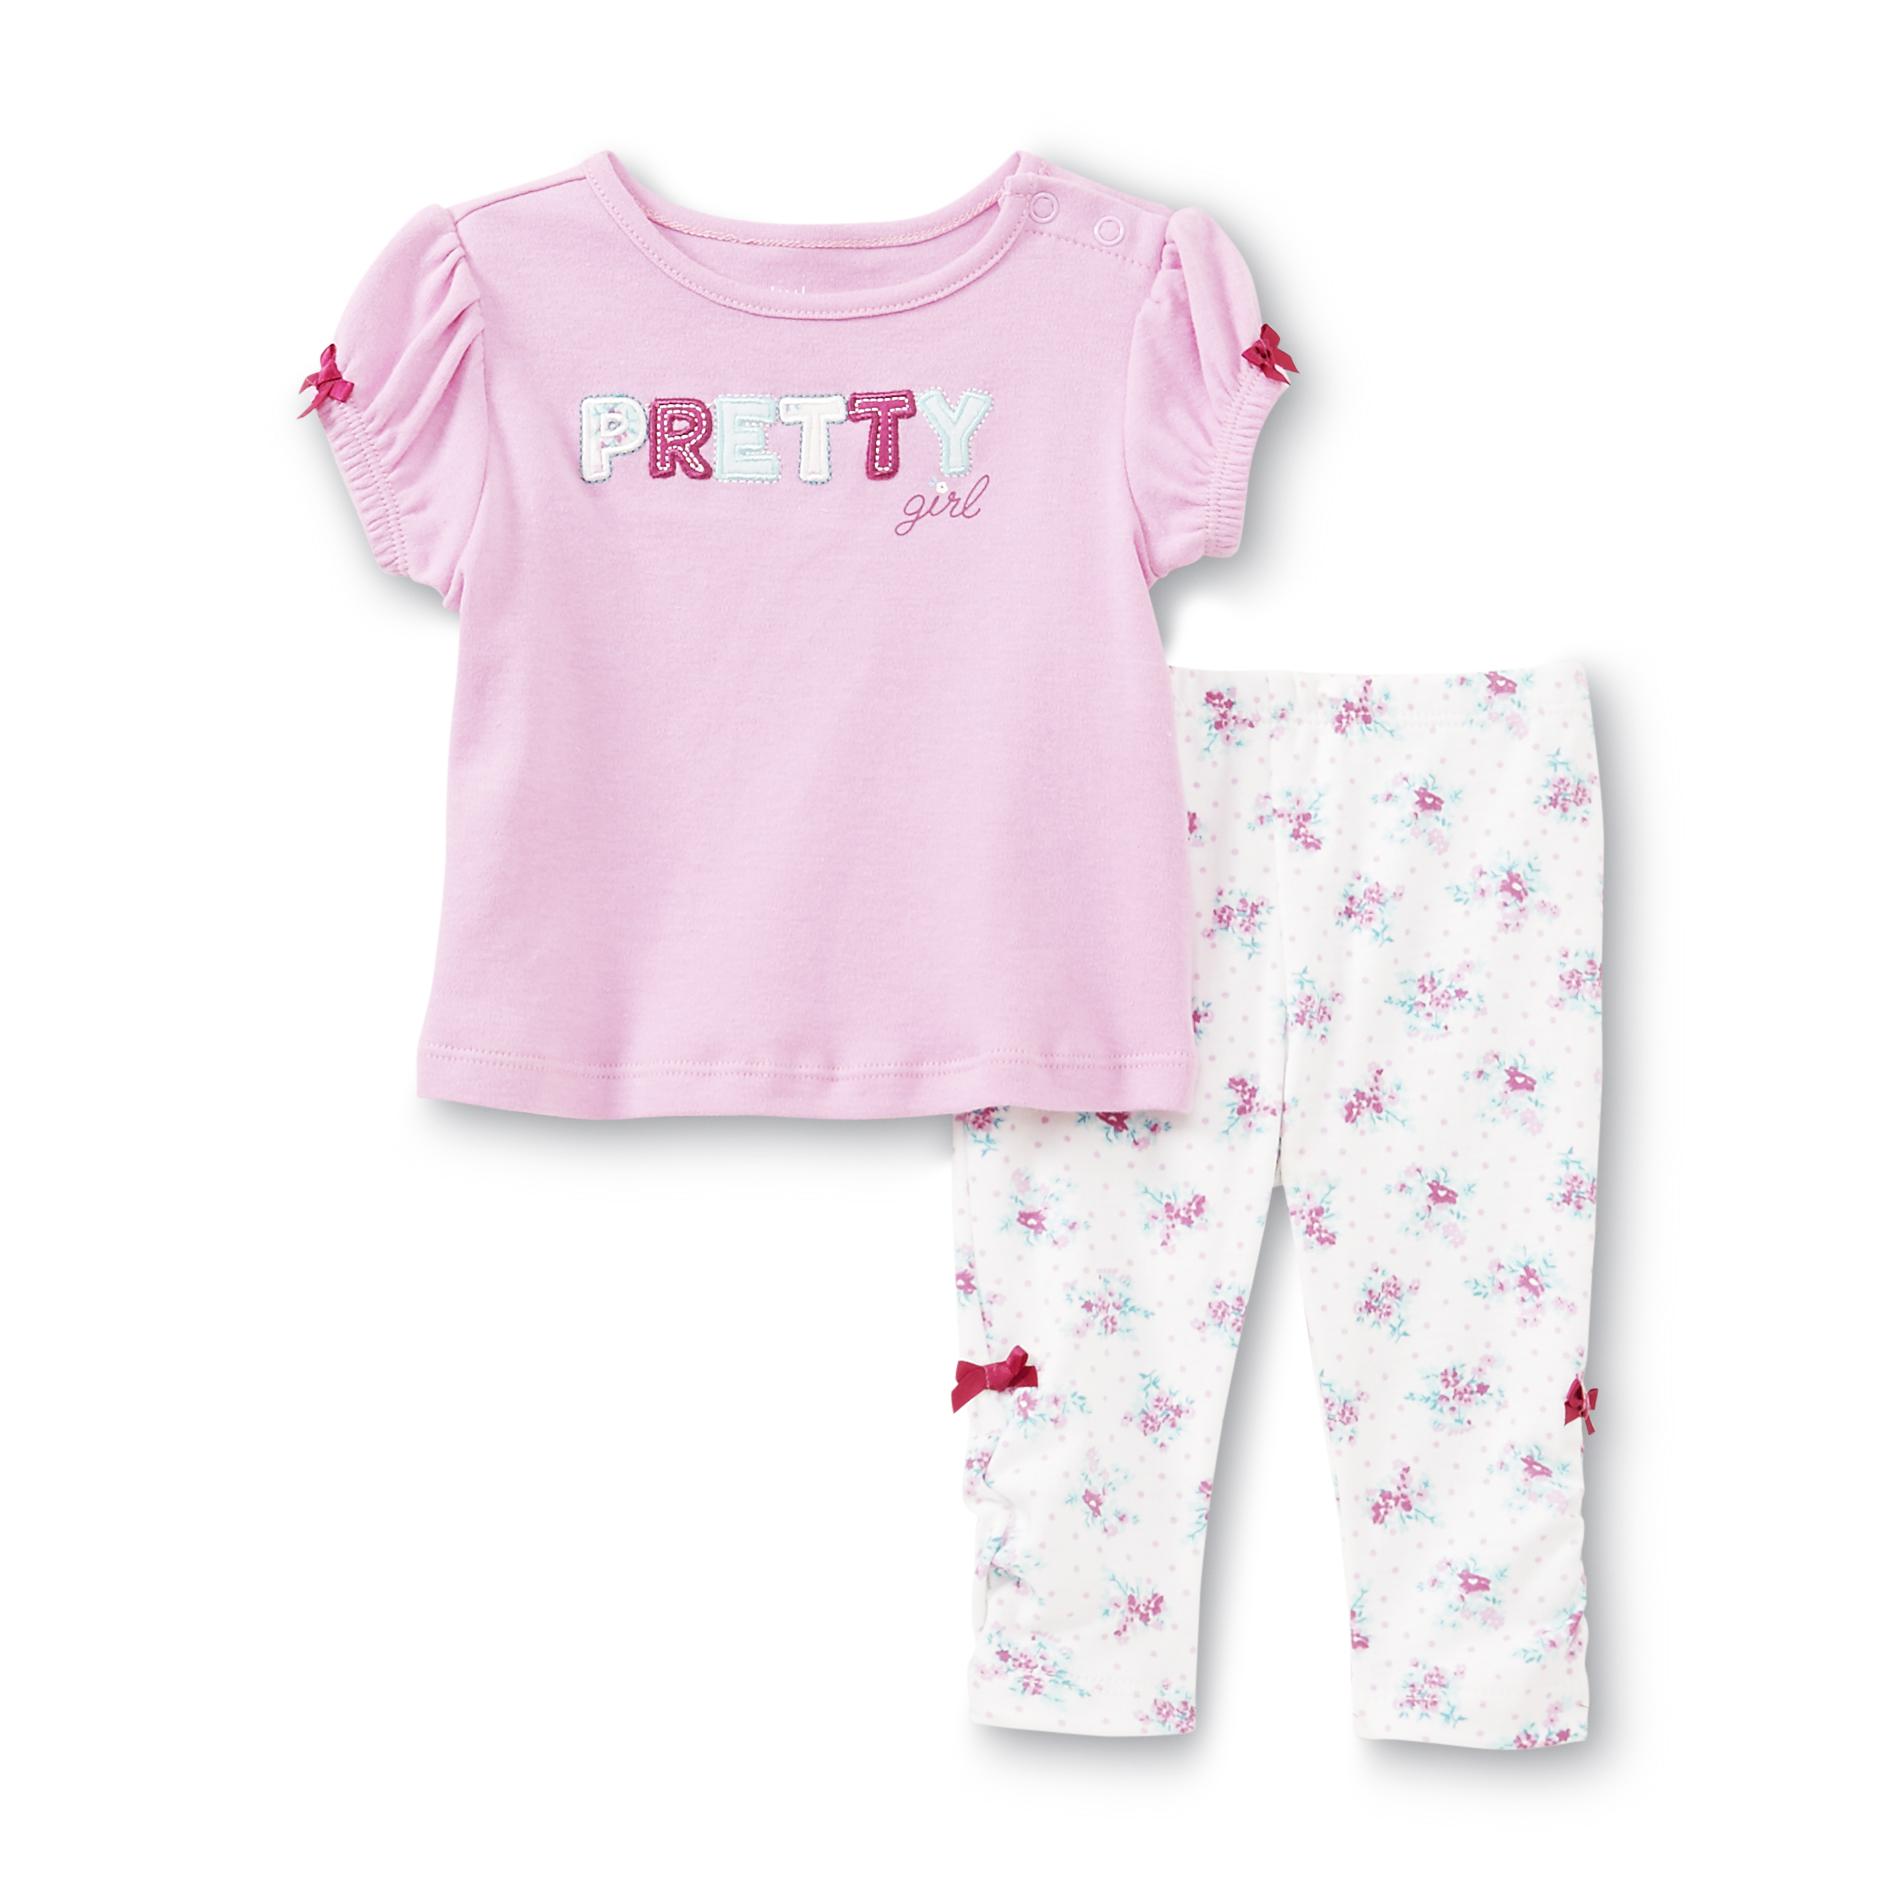 Little Wonders Newborn & Infant Girl's Graphic Shirt & Leggings - Pretty Girl